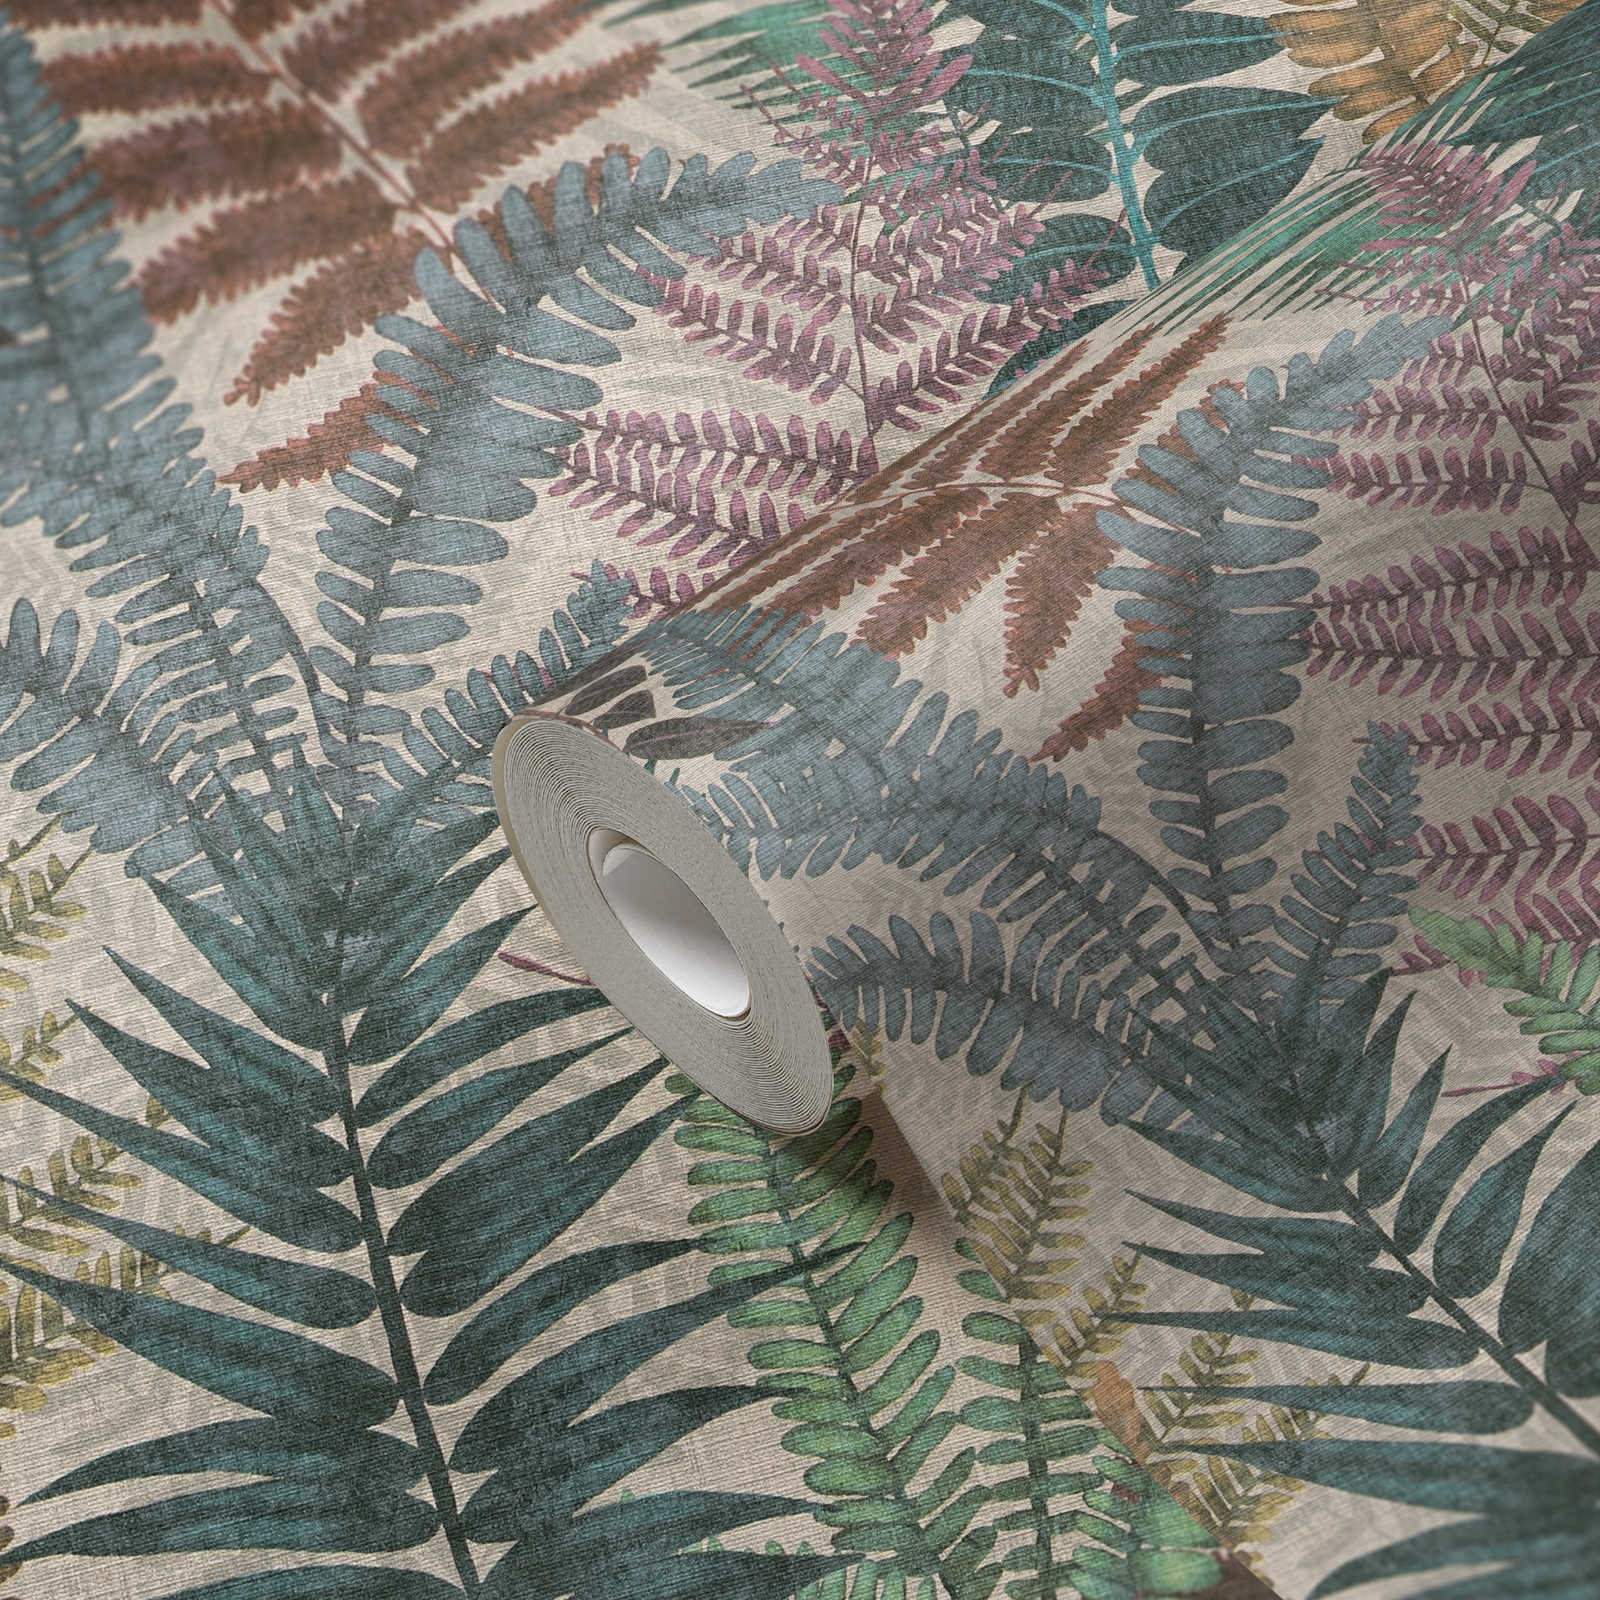             papier peint en papier floral avec feuilles de fougère légèrement structuré, mat - multicolore, beige, vert
        